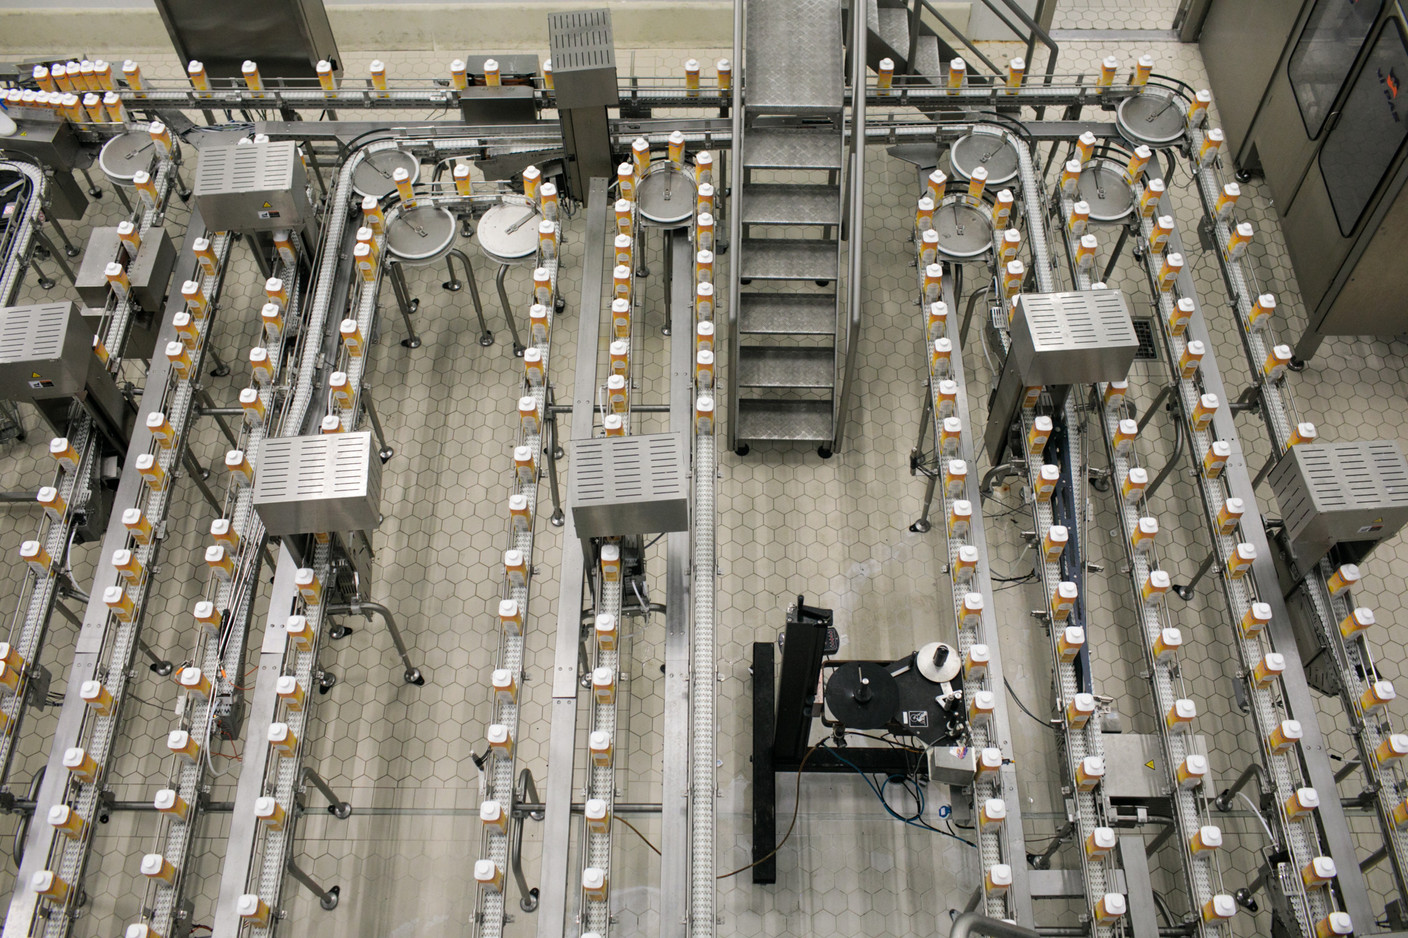 Vues d’en haut, les nombreuses machines de Luxlait ne s’arrêtent pas de fonctionner. (Photo: Matic Zorman / Maison Moderne)